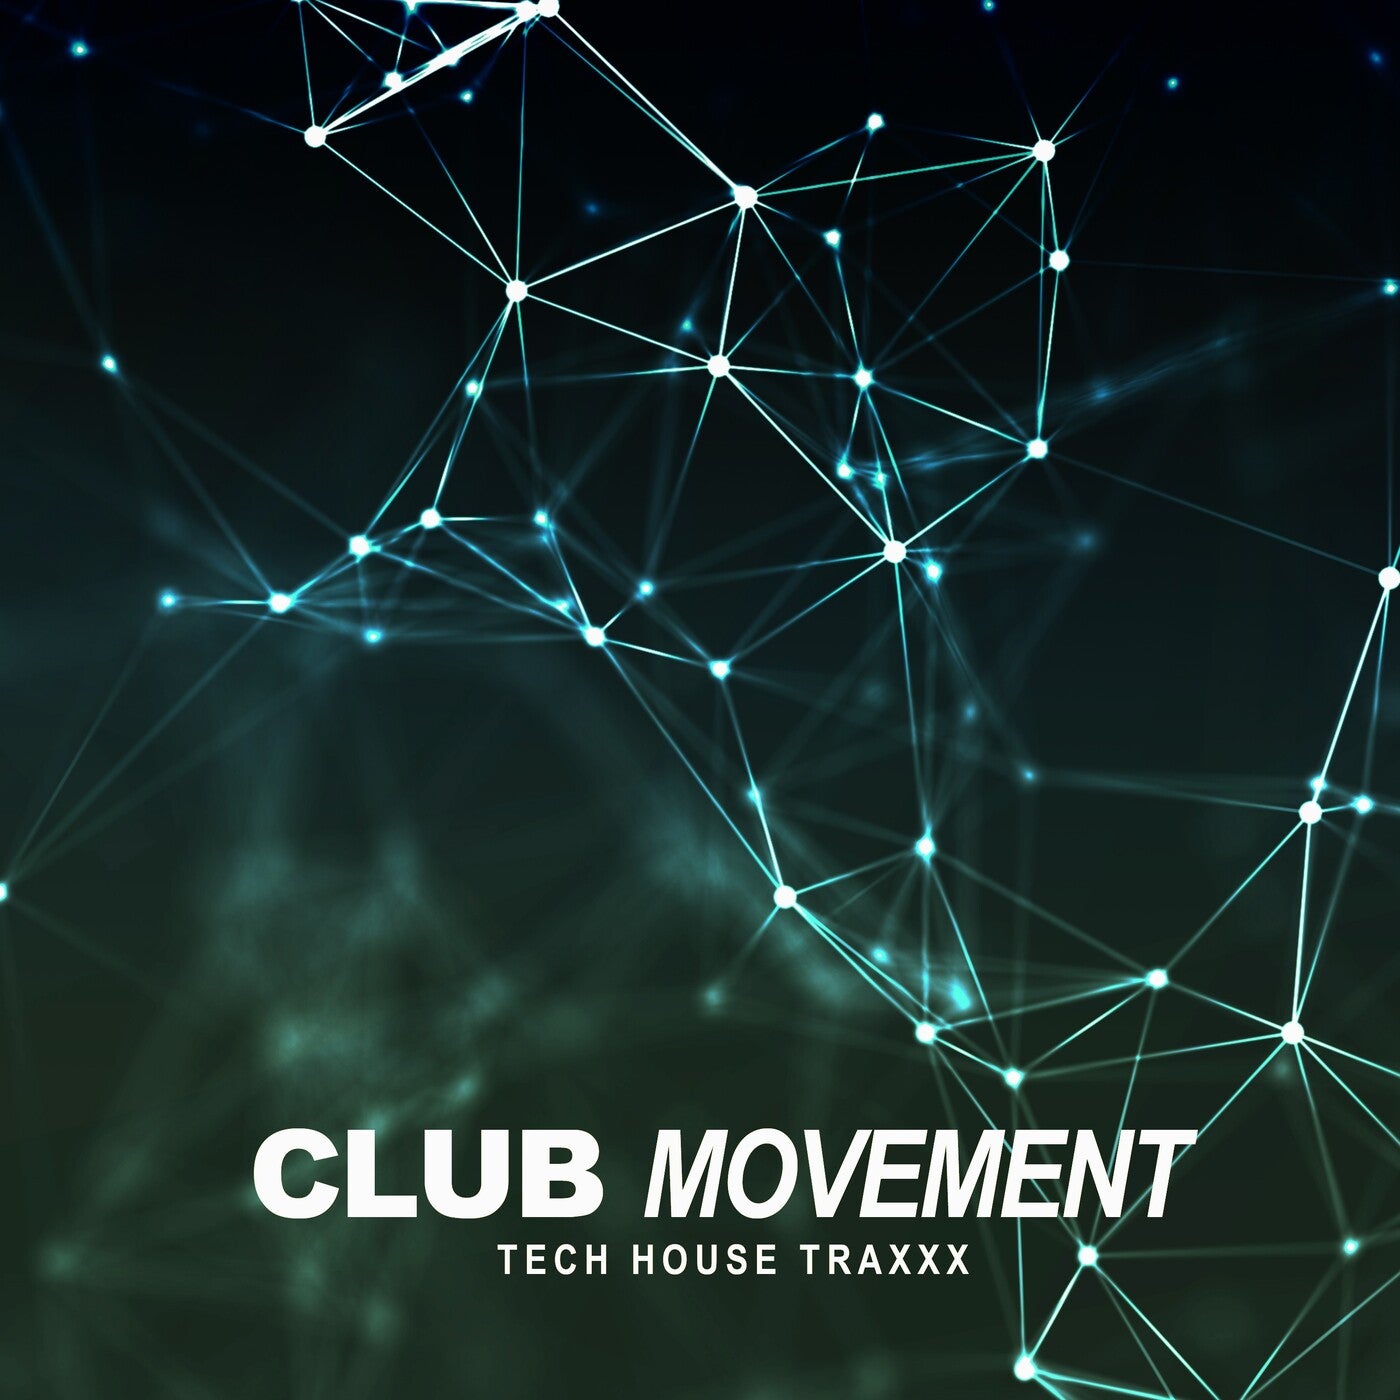 Club Movement (Tech House Traxxx)